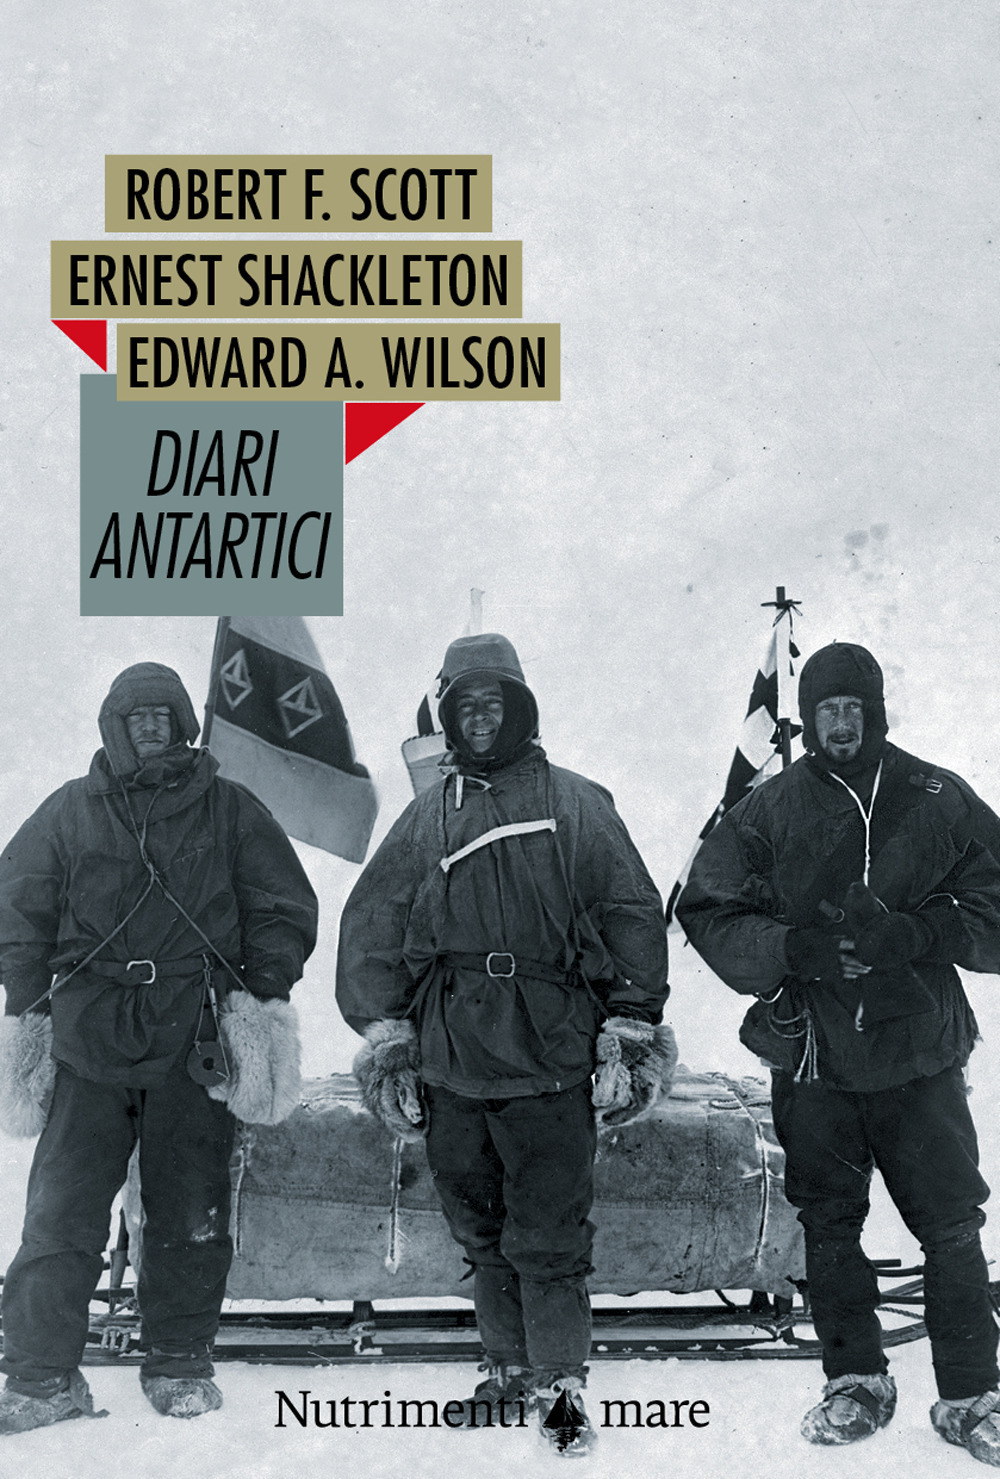 Libri Scott Robert F. / Ernest Shackleton / Wilson Edward O. - Diari Antartici NUOVO SIGILLATO, EDIZIONE DEL 28/01/2021 SUBITO DISPONIBILE